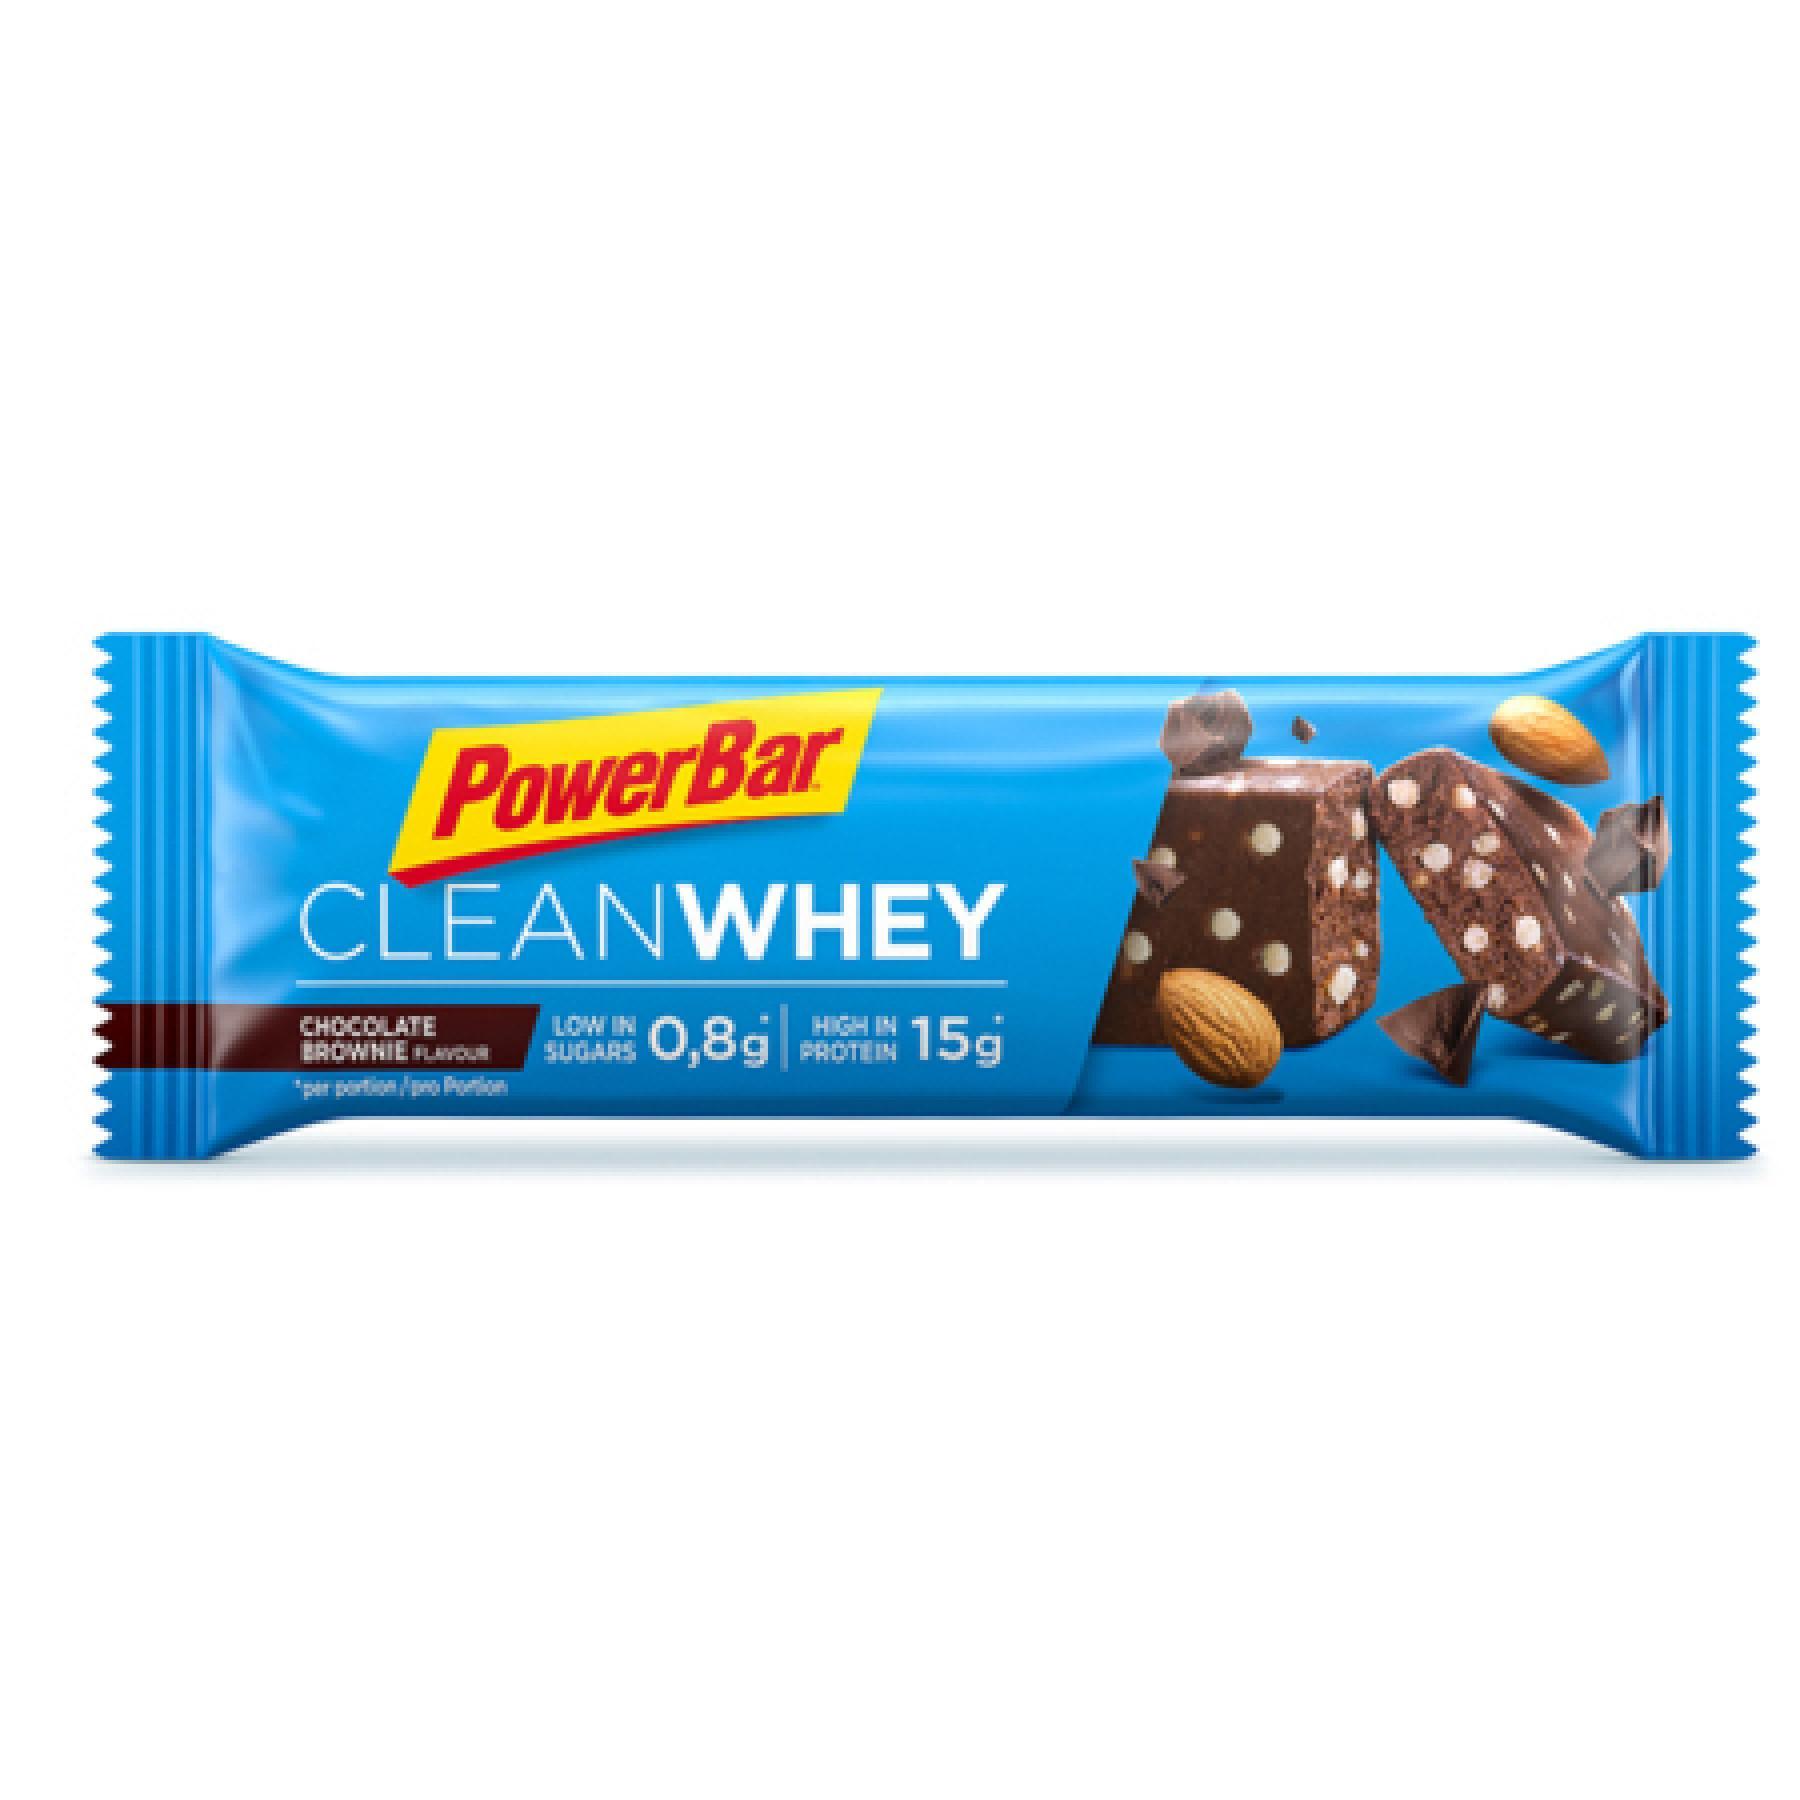 Pacote de 18 barras PowerBar Clean Whey - Chocolate Brownie